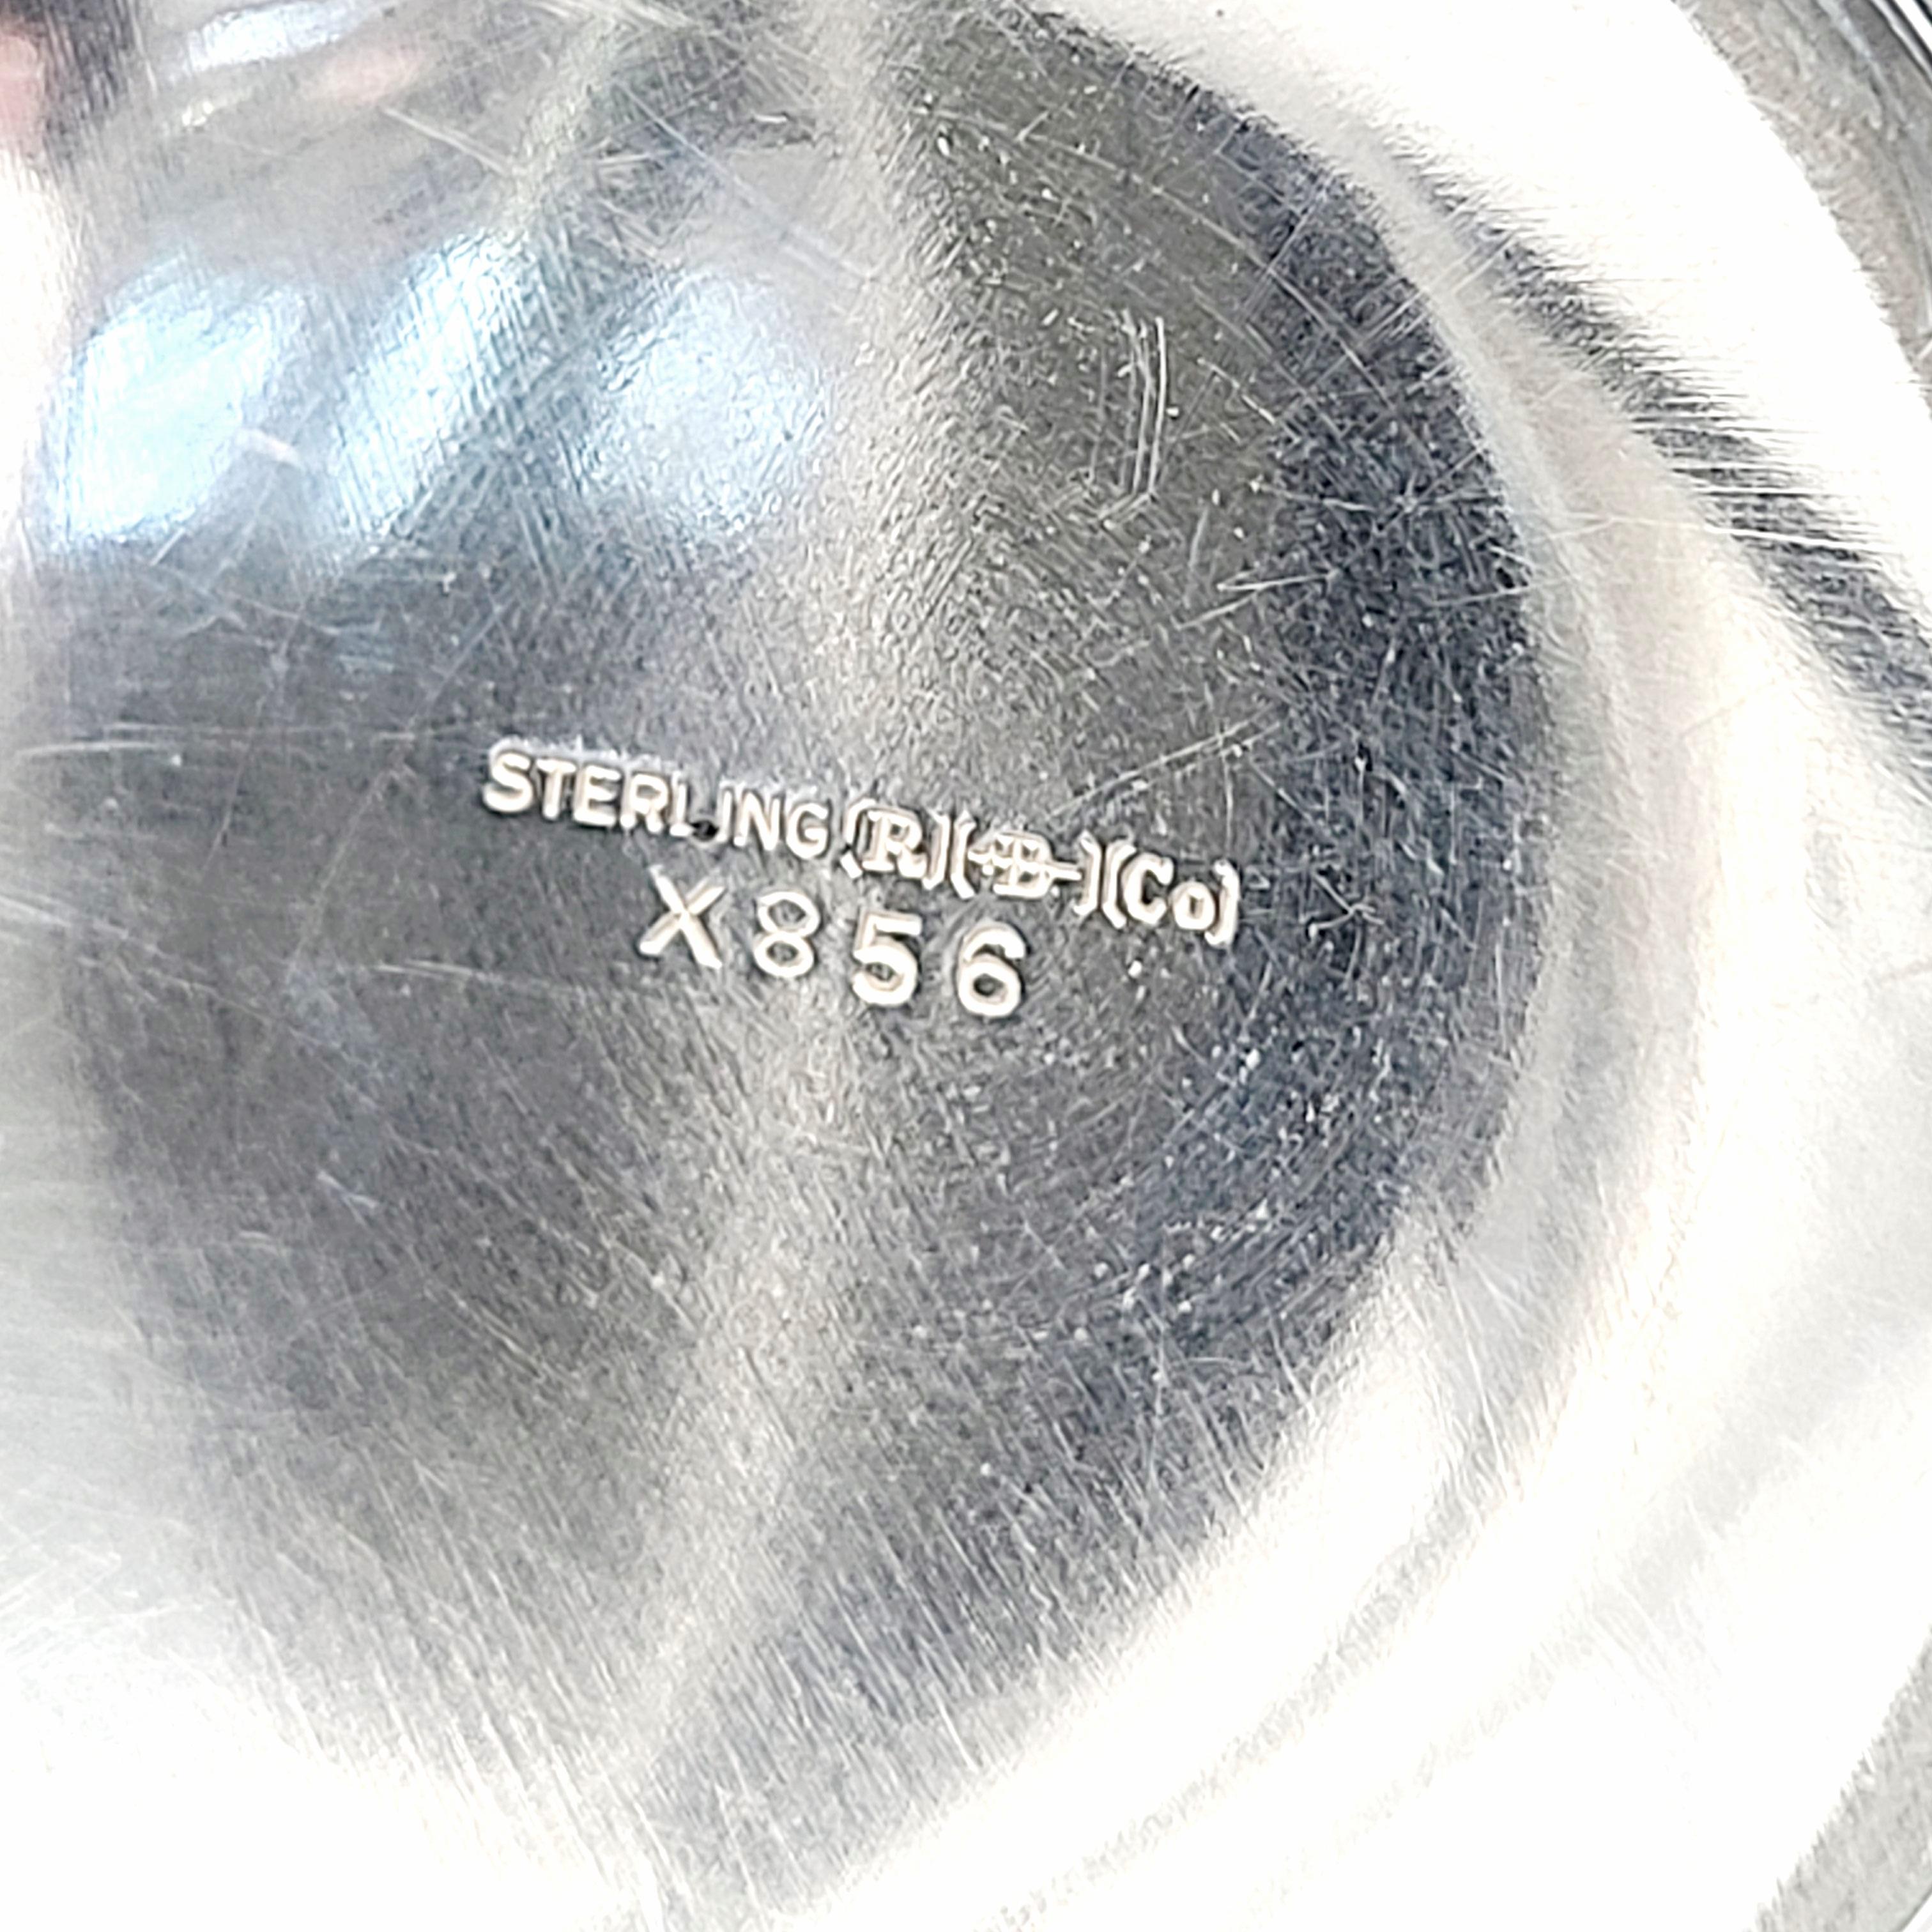 Blackinton Sterling Silver Honeybee Jar Lid X856 6